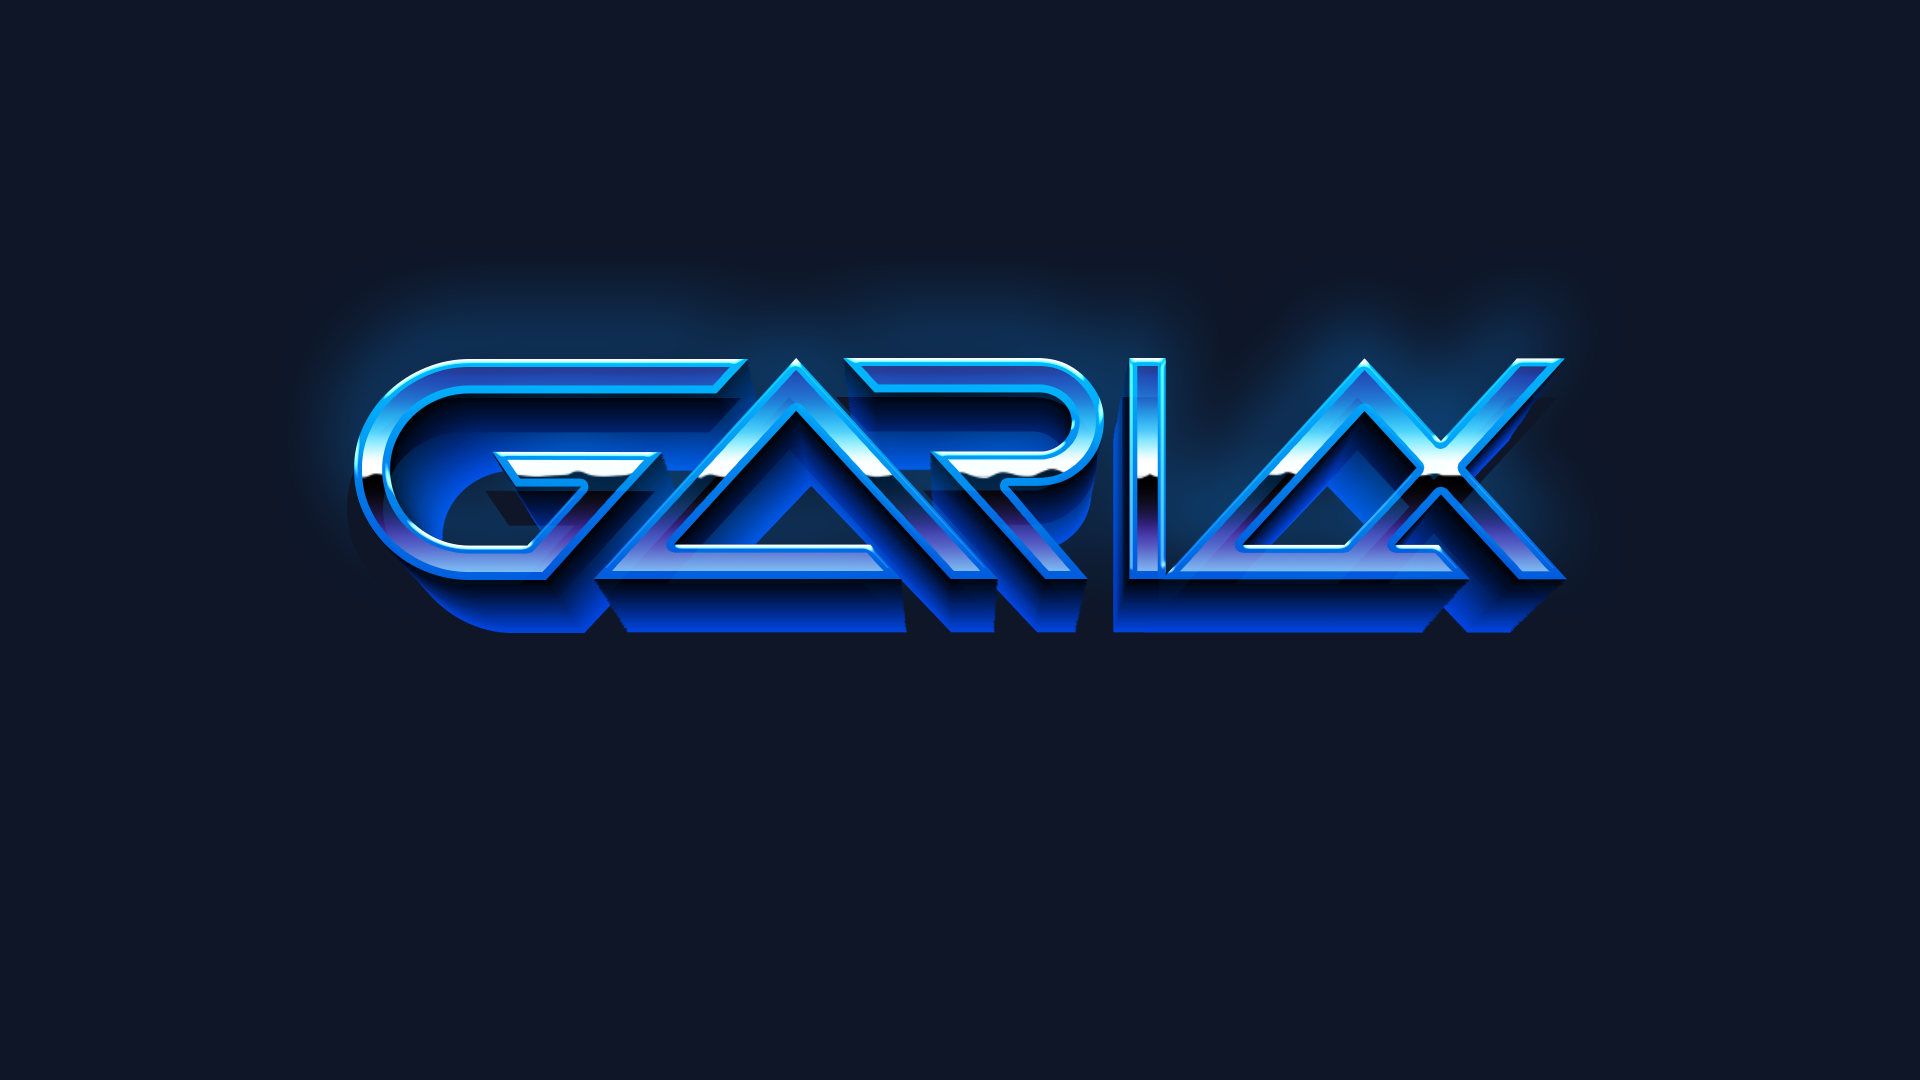 Gariax